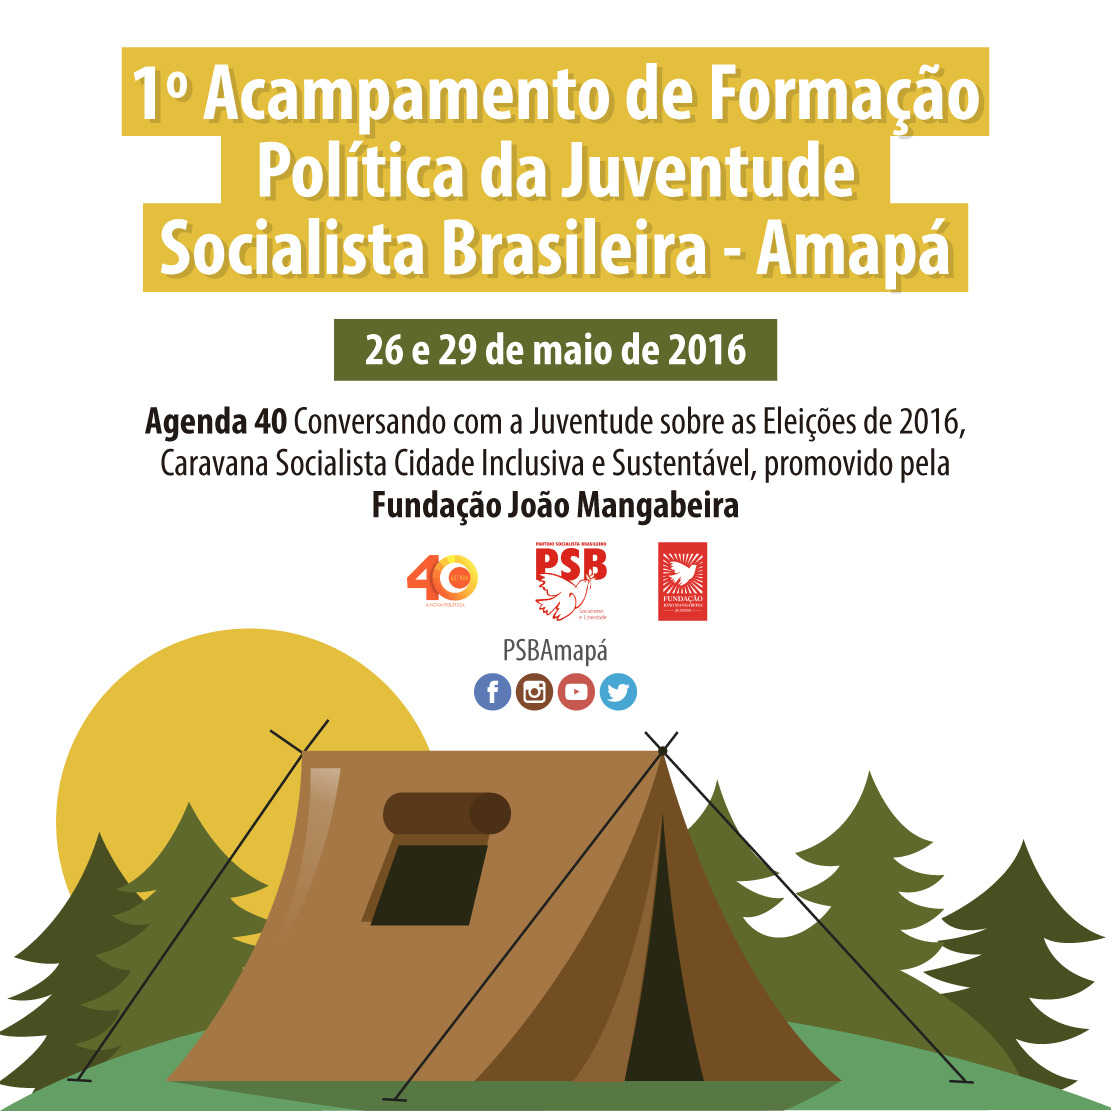 1º-acampamento-de-formacao-politica-da-juventude-socialista-brasileira-amapa